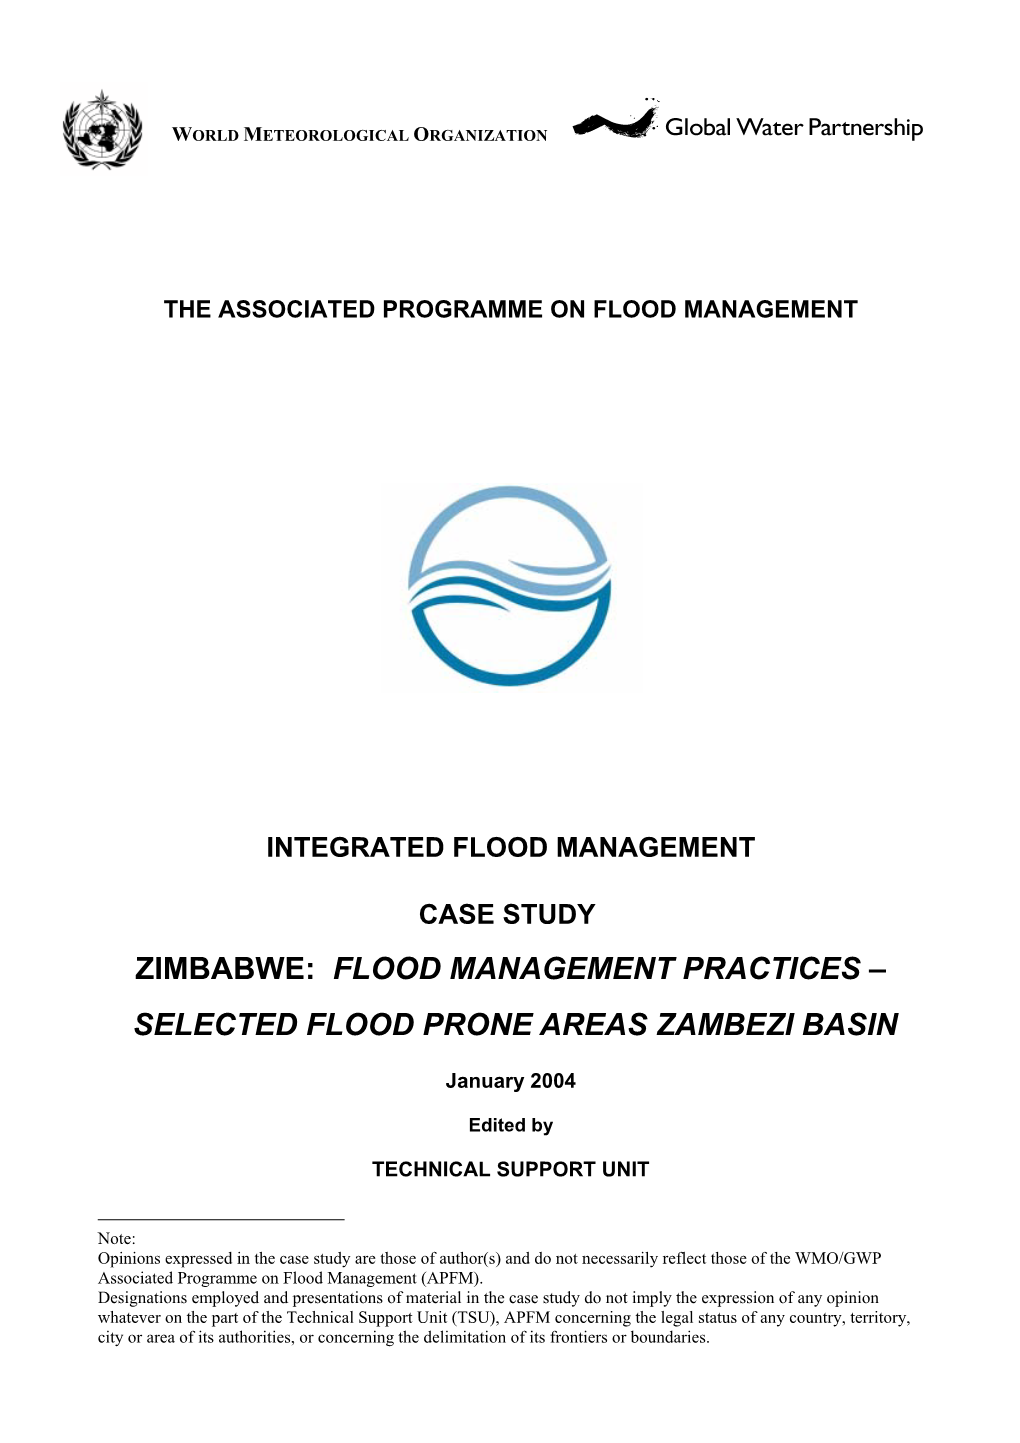 Selected Flood Prone Areas Zambezi Basin